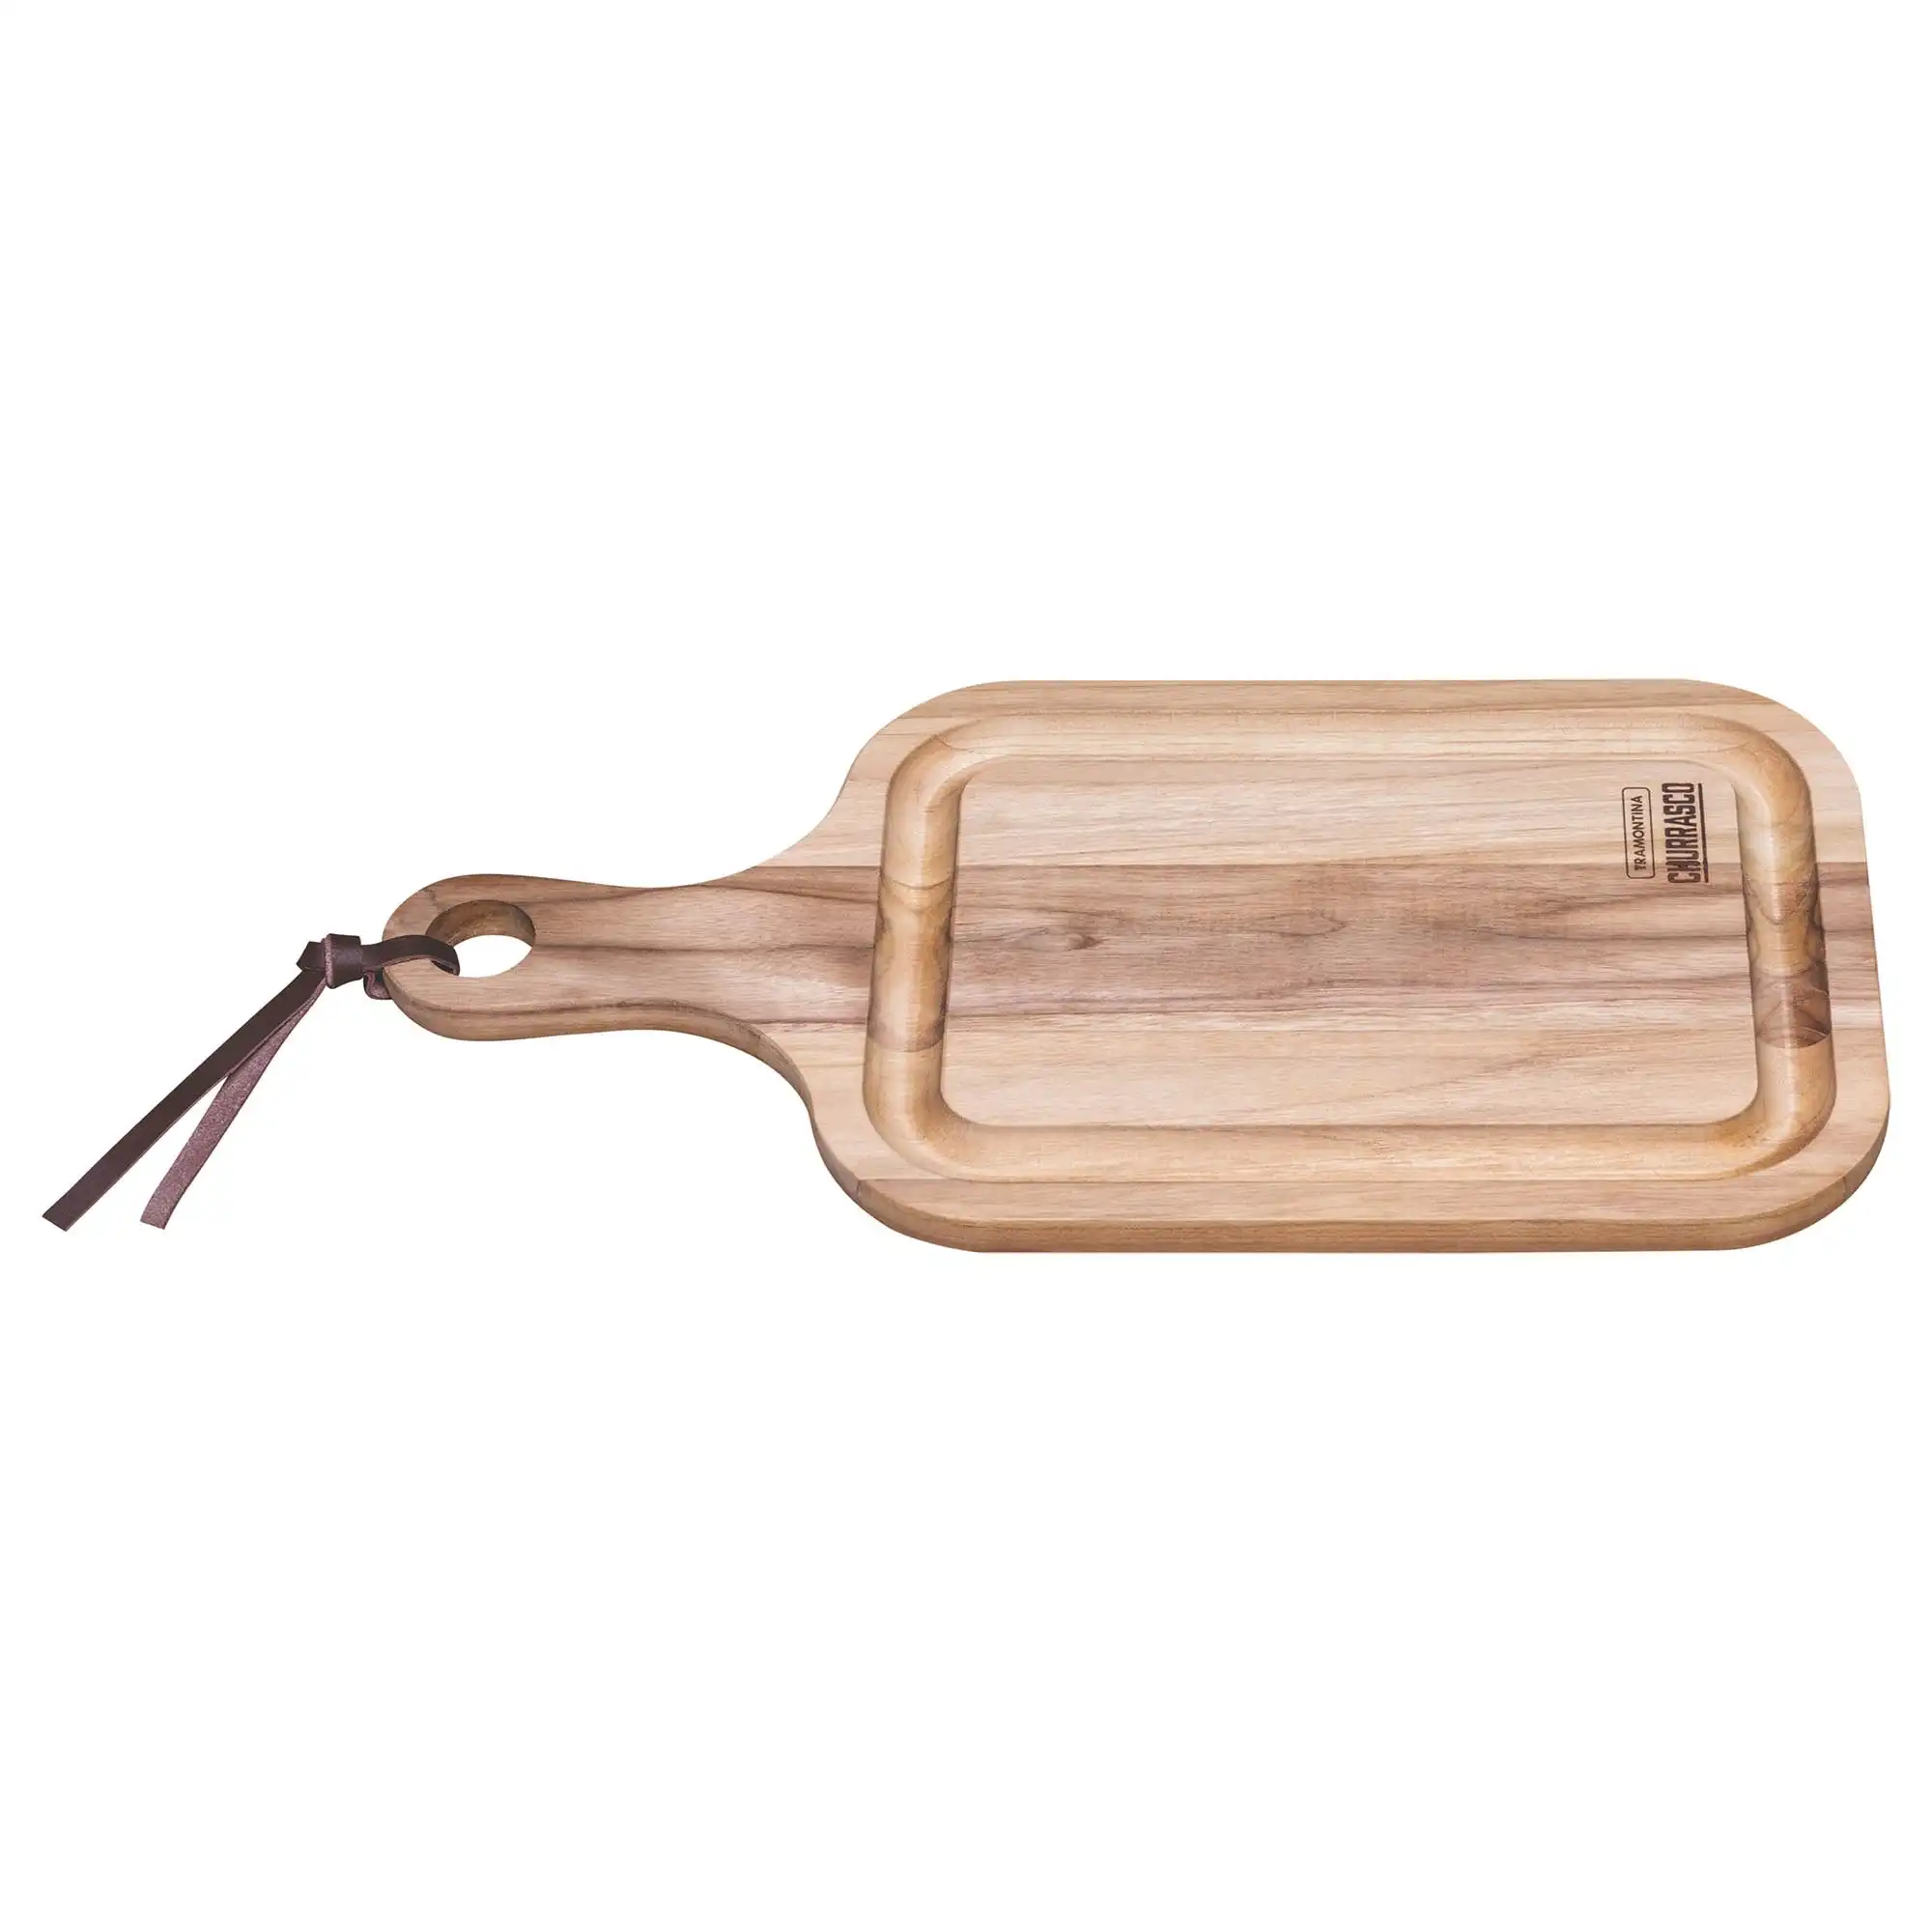 Tramontina Cutting Board Cutting board with handle, Teak wood 460x230mm